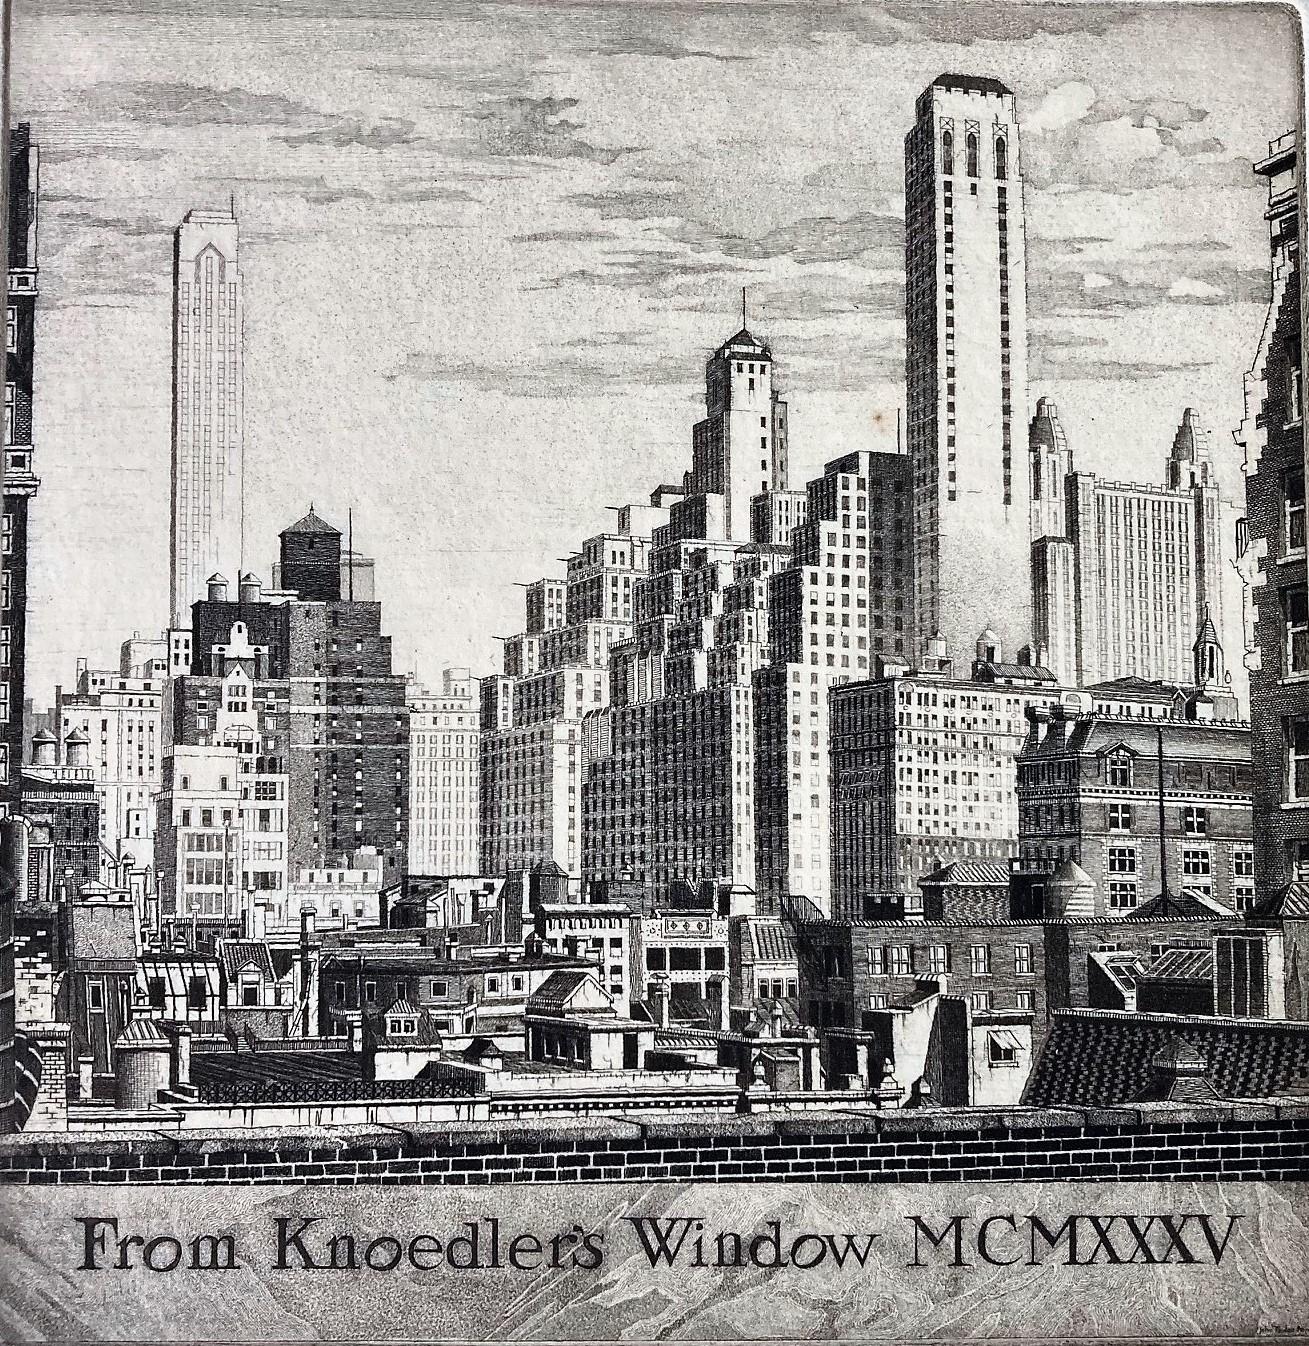 De la fenêtre de Knoedler's Window MCMXXXV - Print de John Taylor Arms